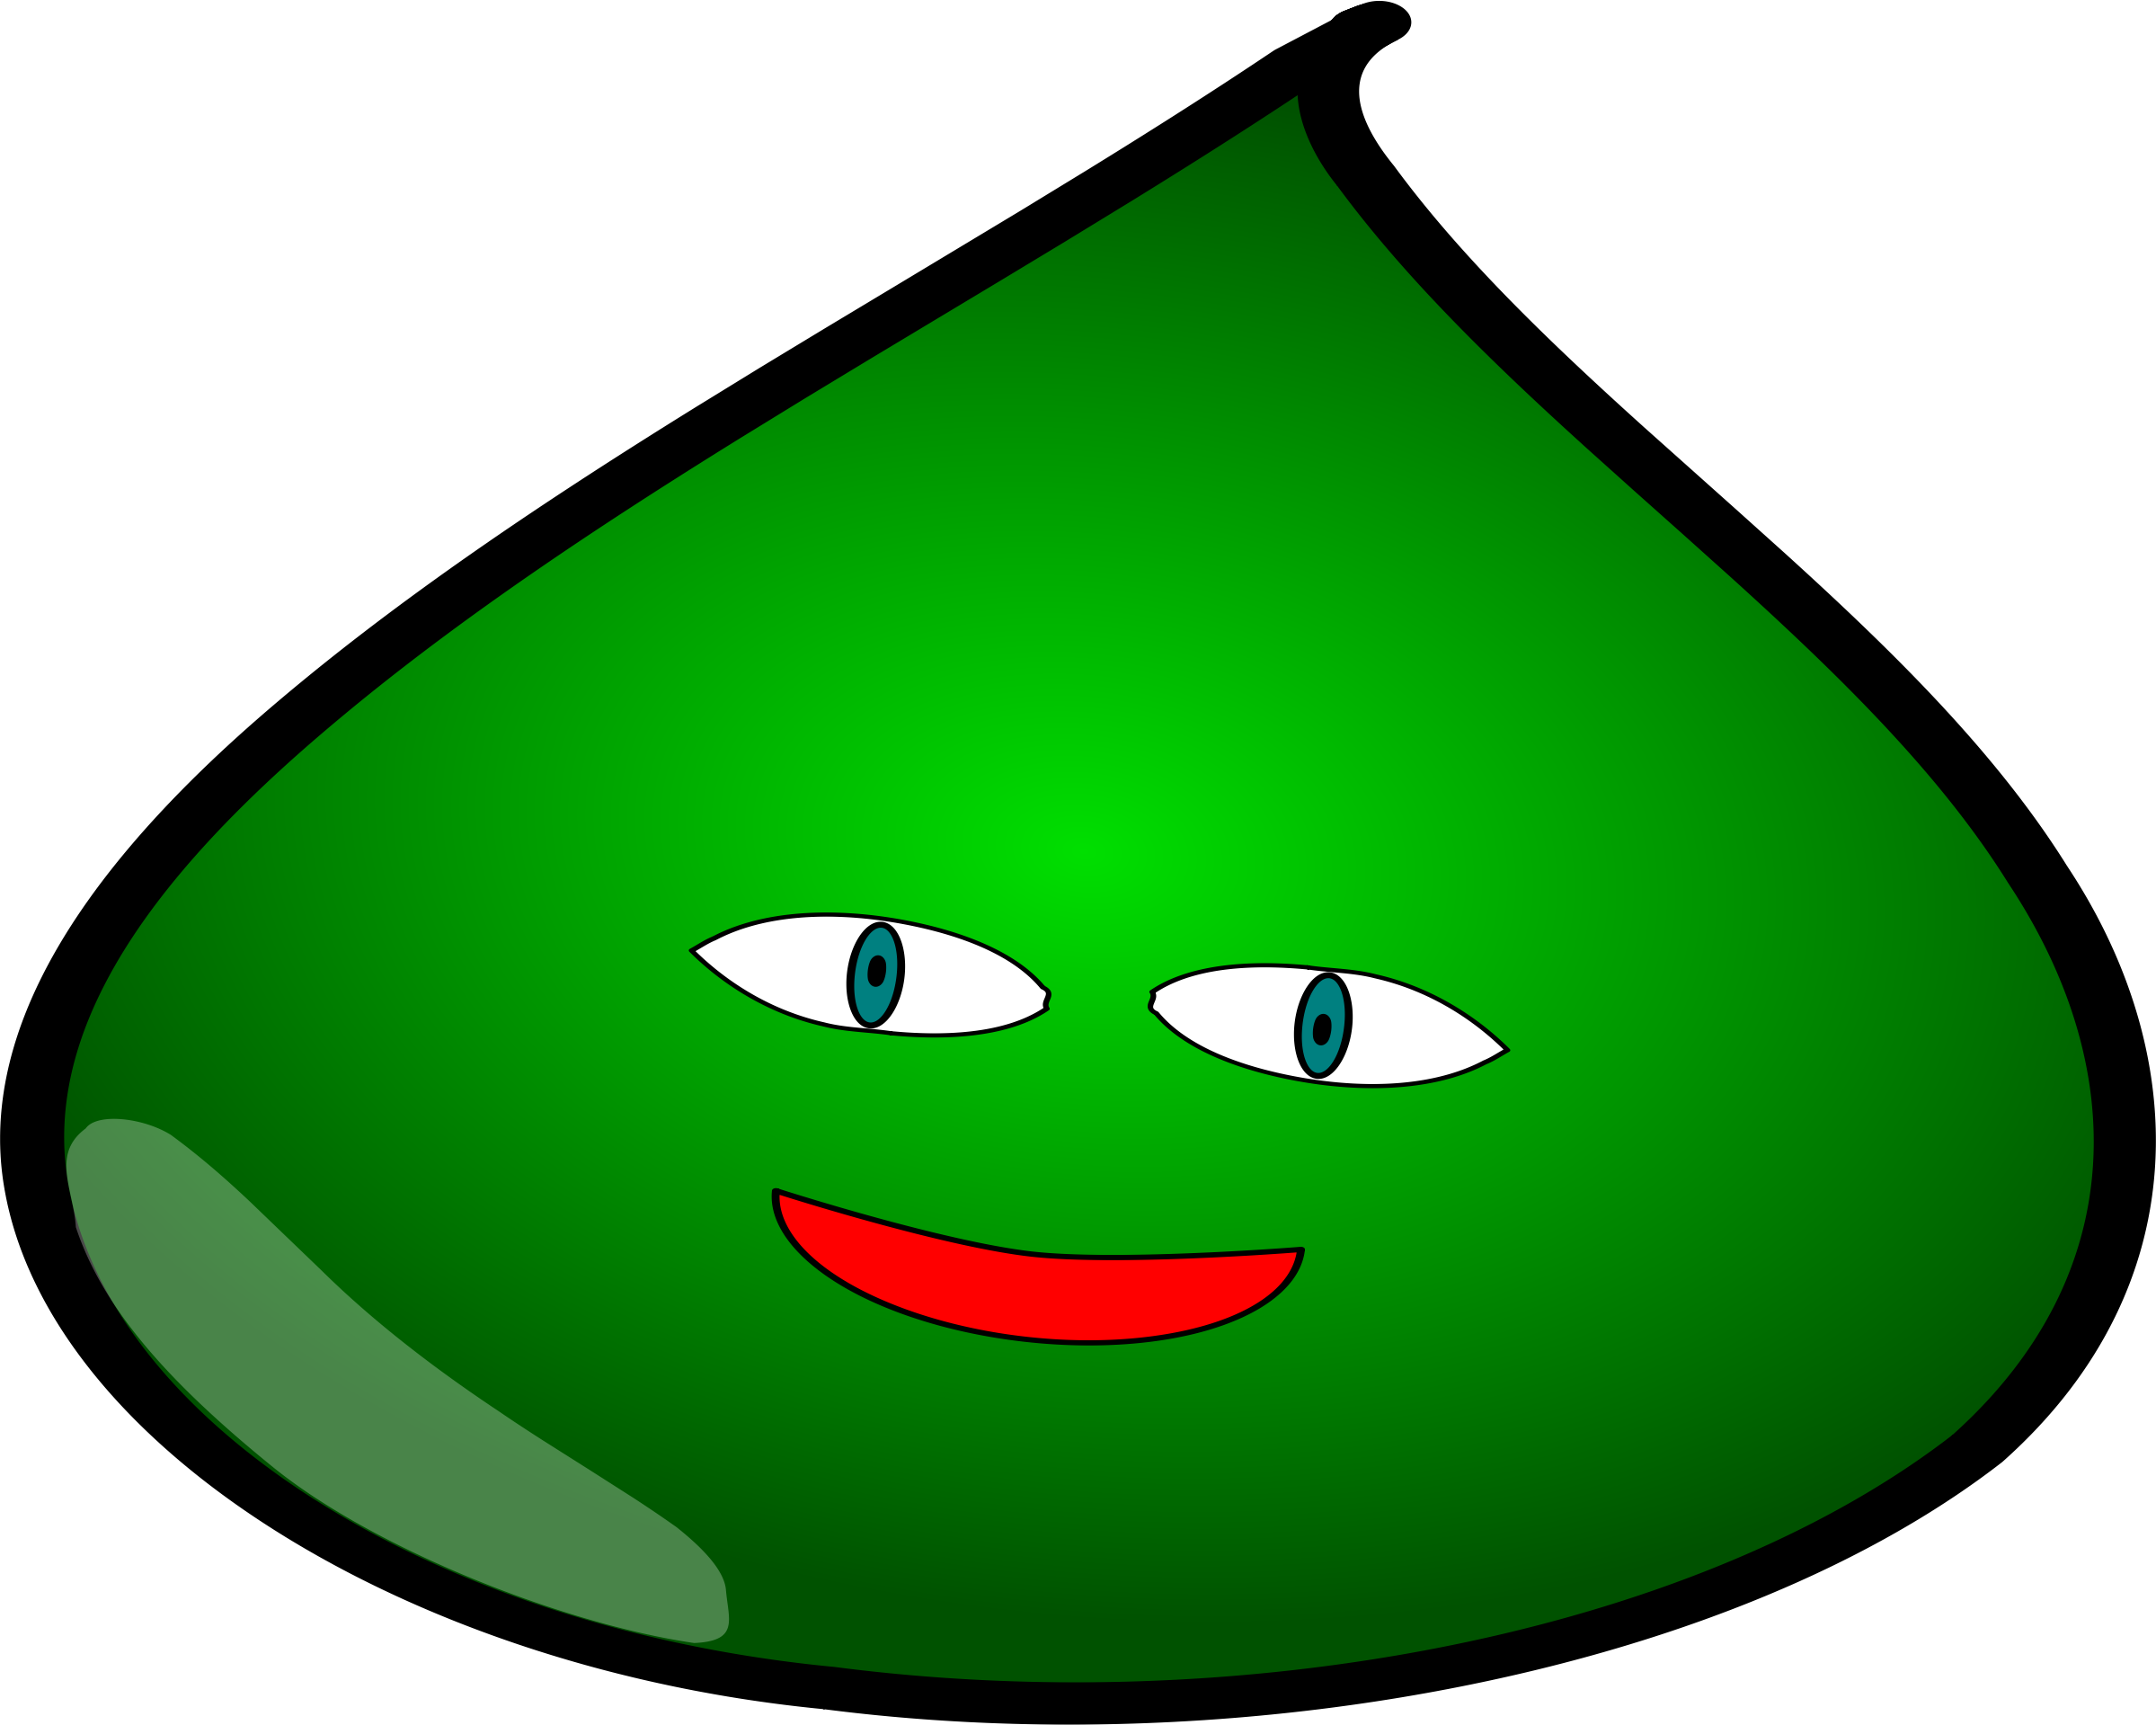 Green Slime Monster - Slime Monster (2399x1919)